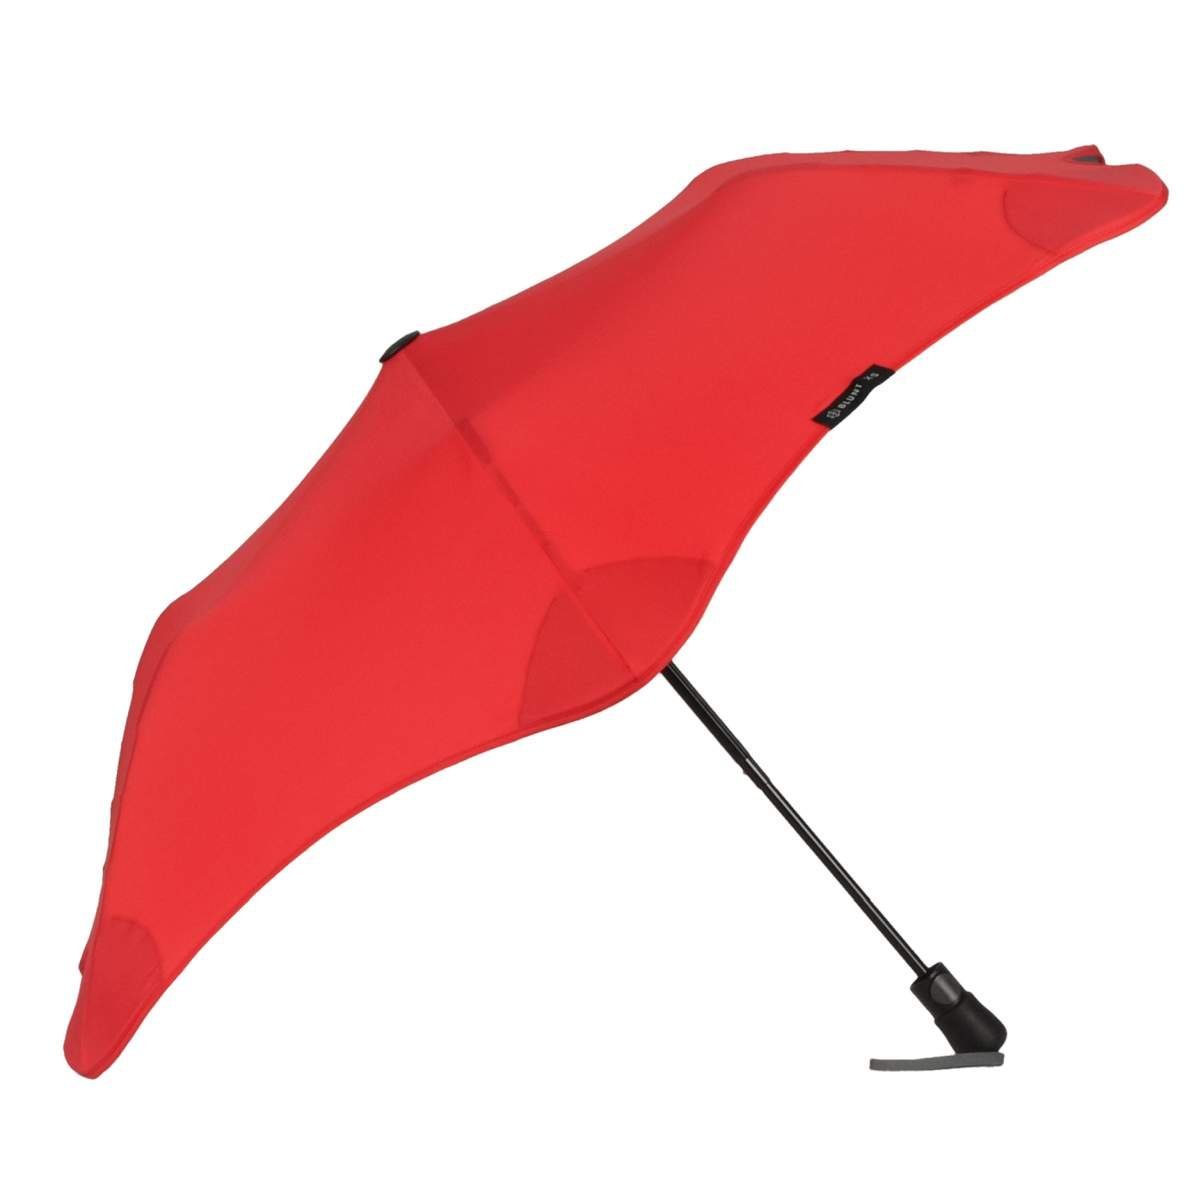 Blunt Taschenregenschirm Metro, Regenschirm, Taschenschirm, für Auto und unterwegs, 96cm Durchmesser rot